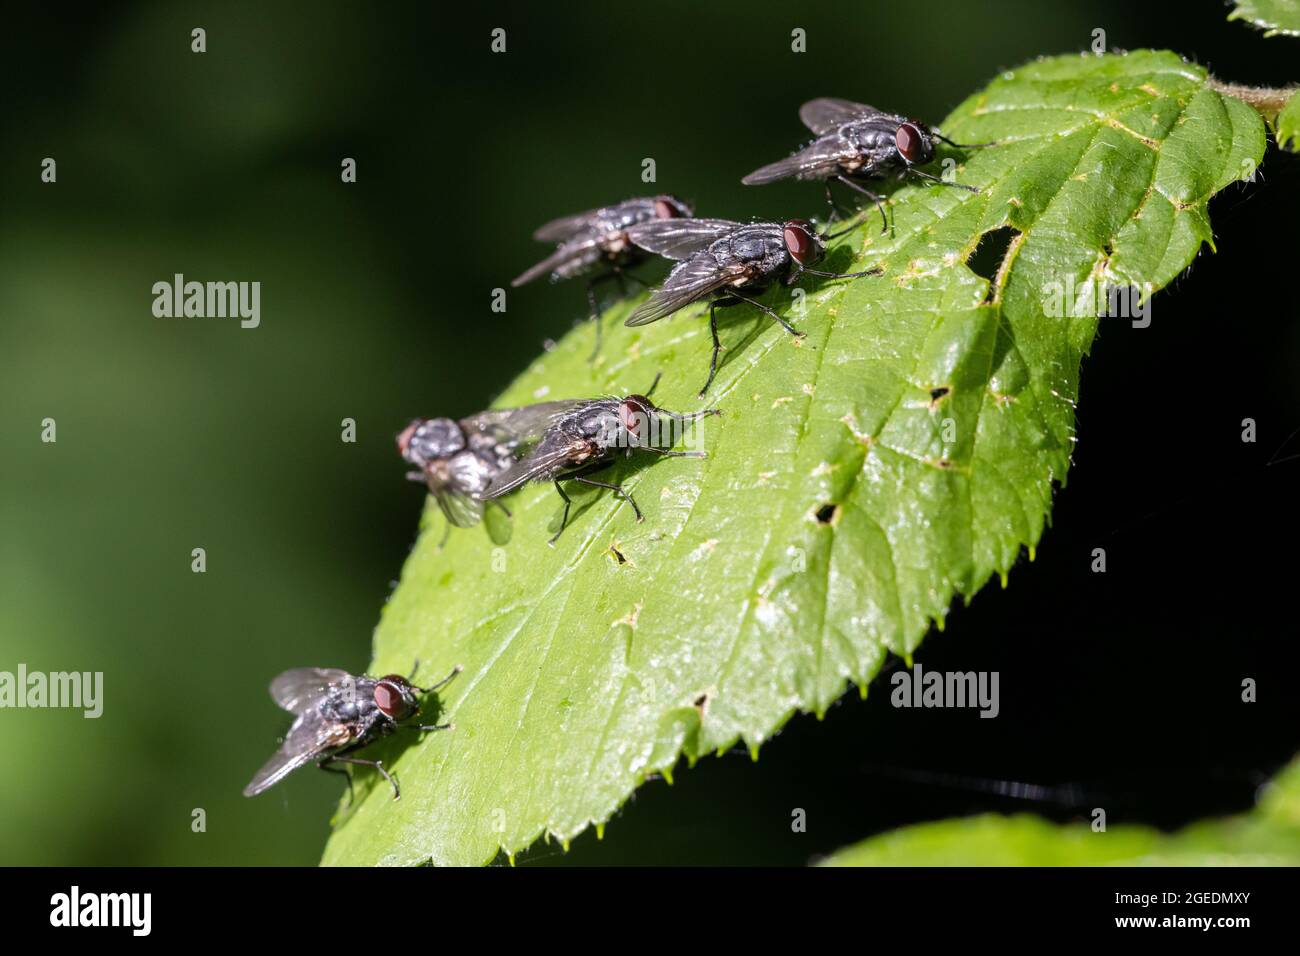 Mouche domestique (Musca domestica) - mouches alignées sur une feuille au soleil, faune britannique Banque D'Images